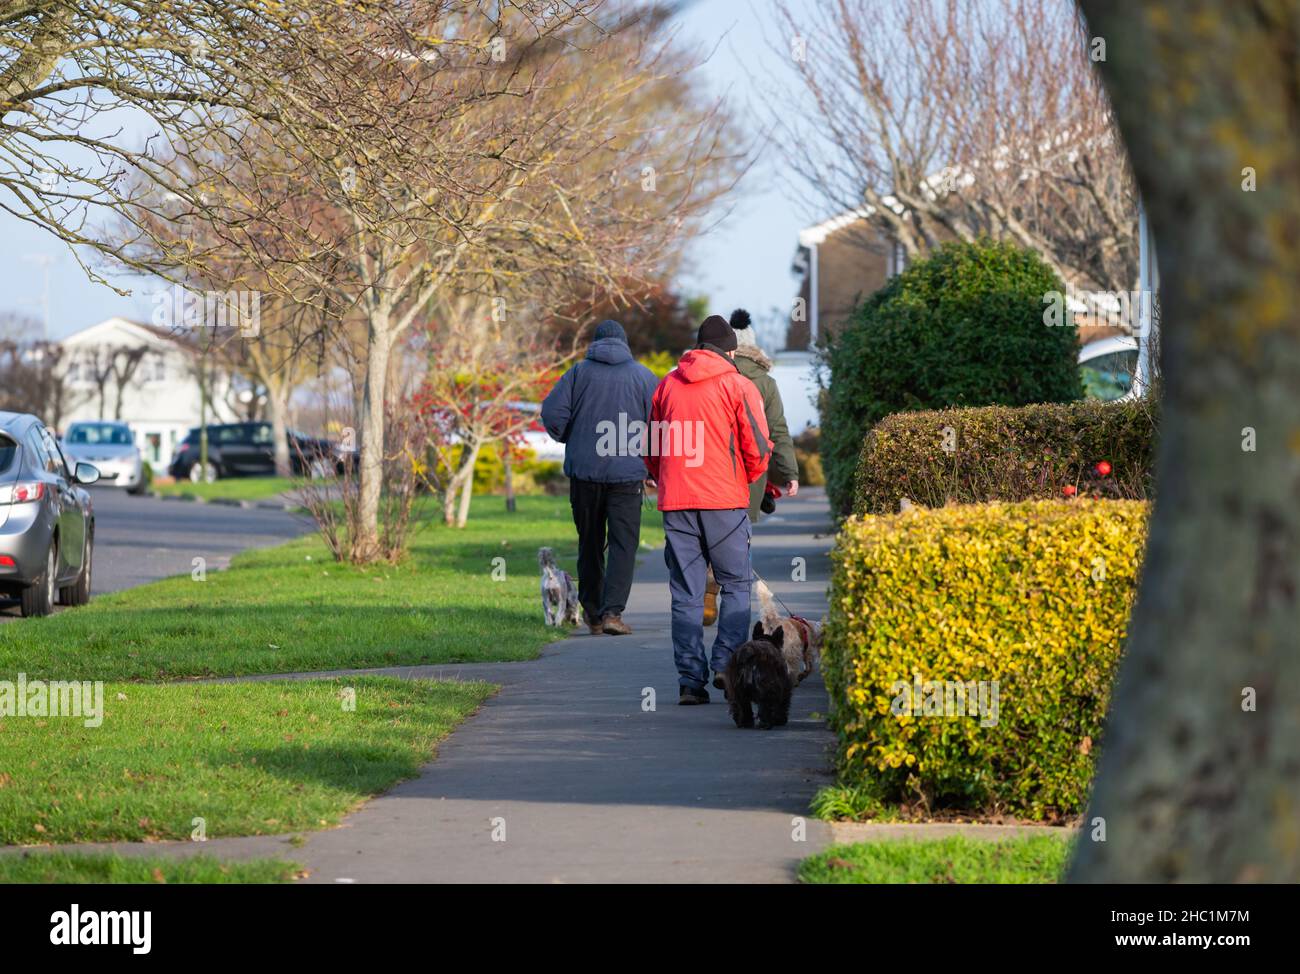 Menschen, die im Winter auf einem Straßenbelag spazieren, in warmen Mänteln gekleidet, Wanderhunde in England, Großbritannien. Stockfoto